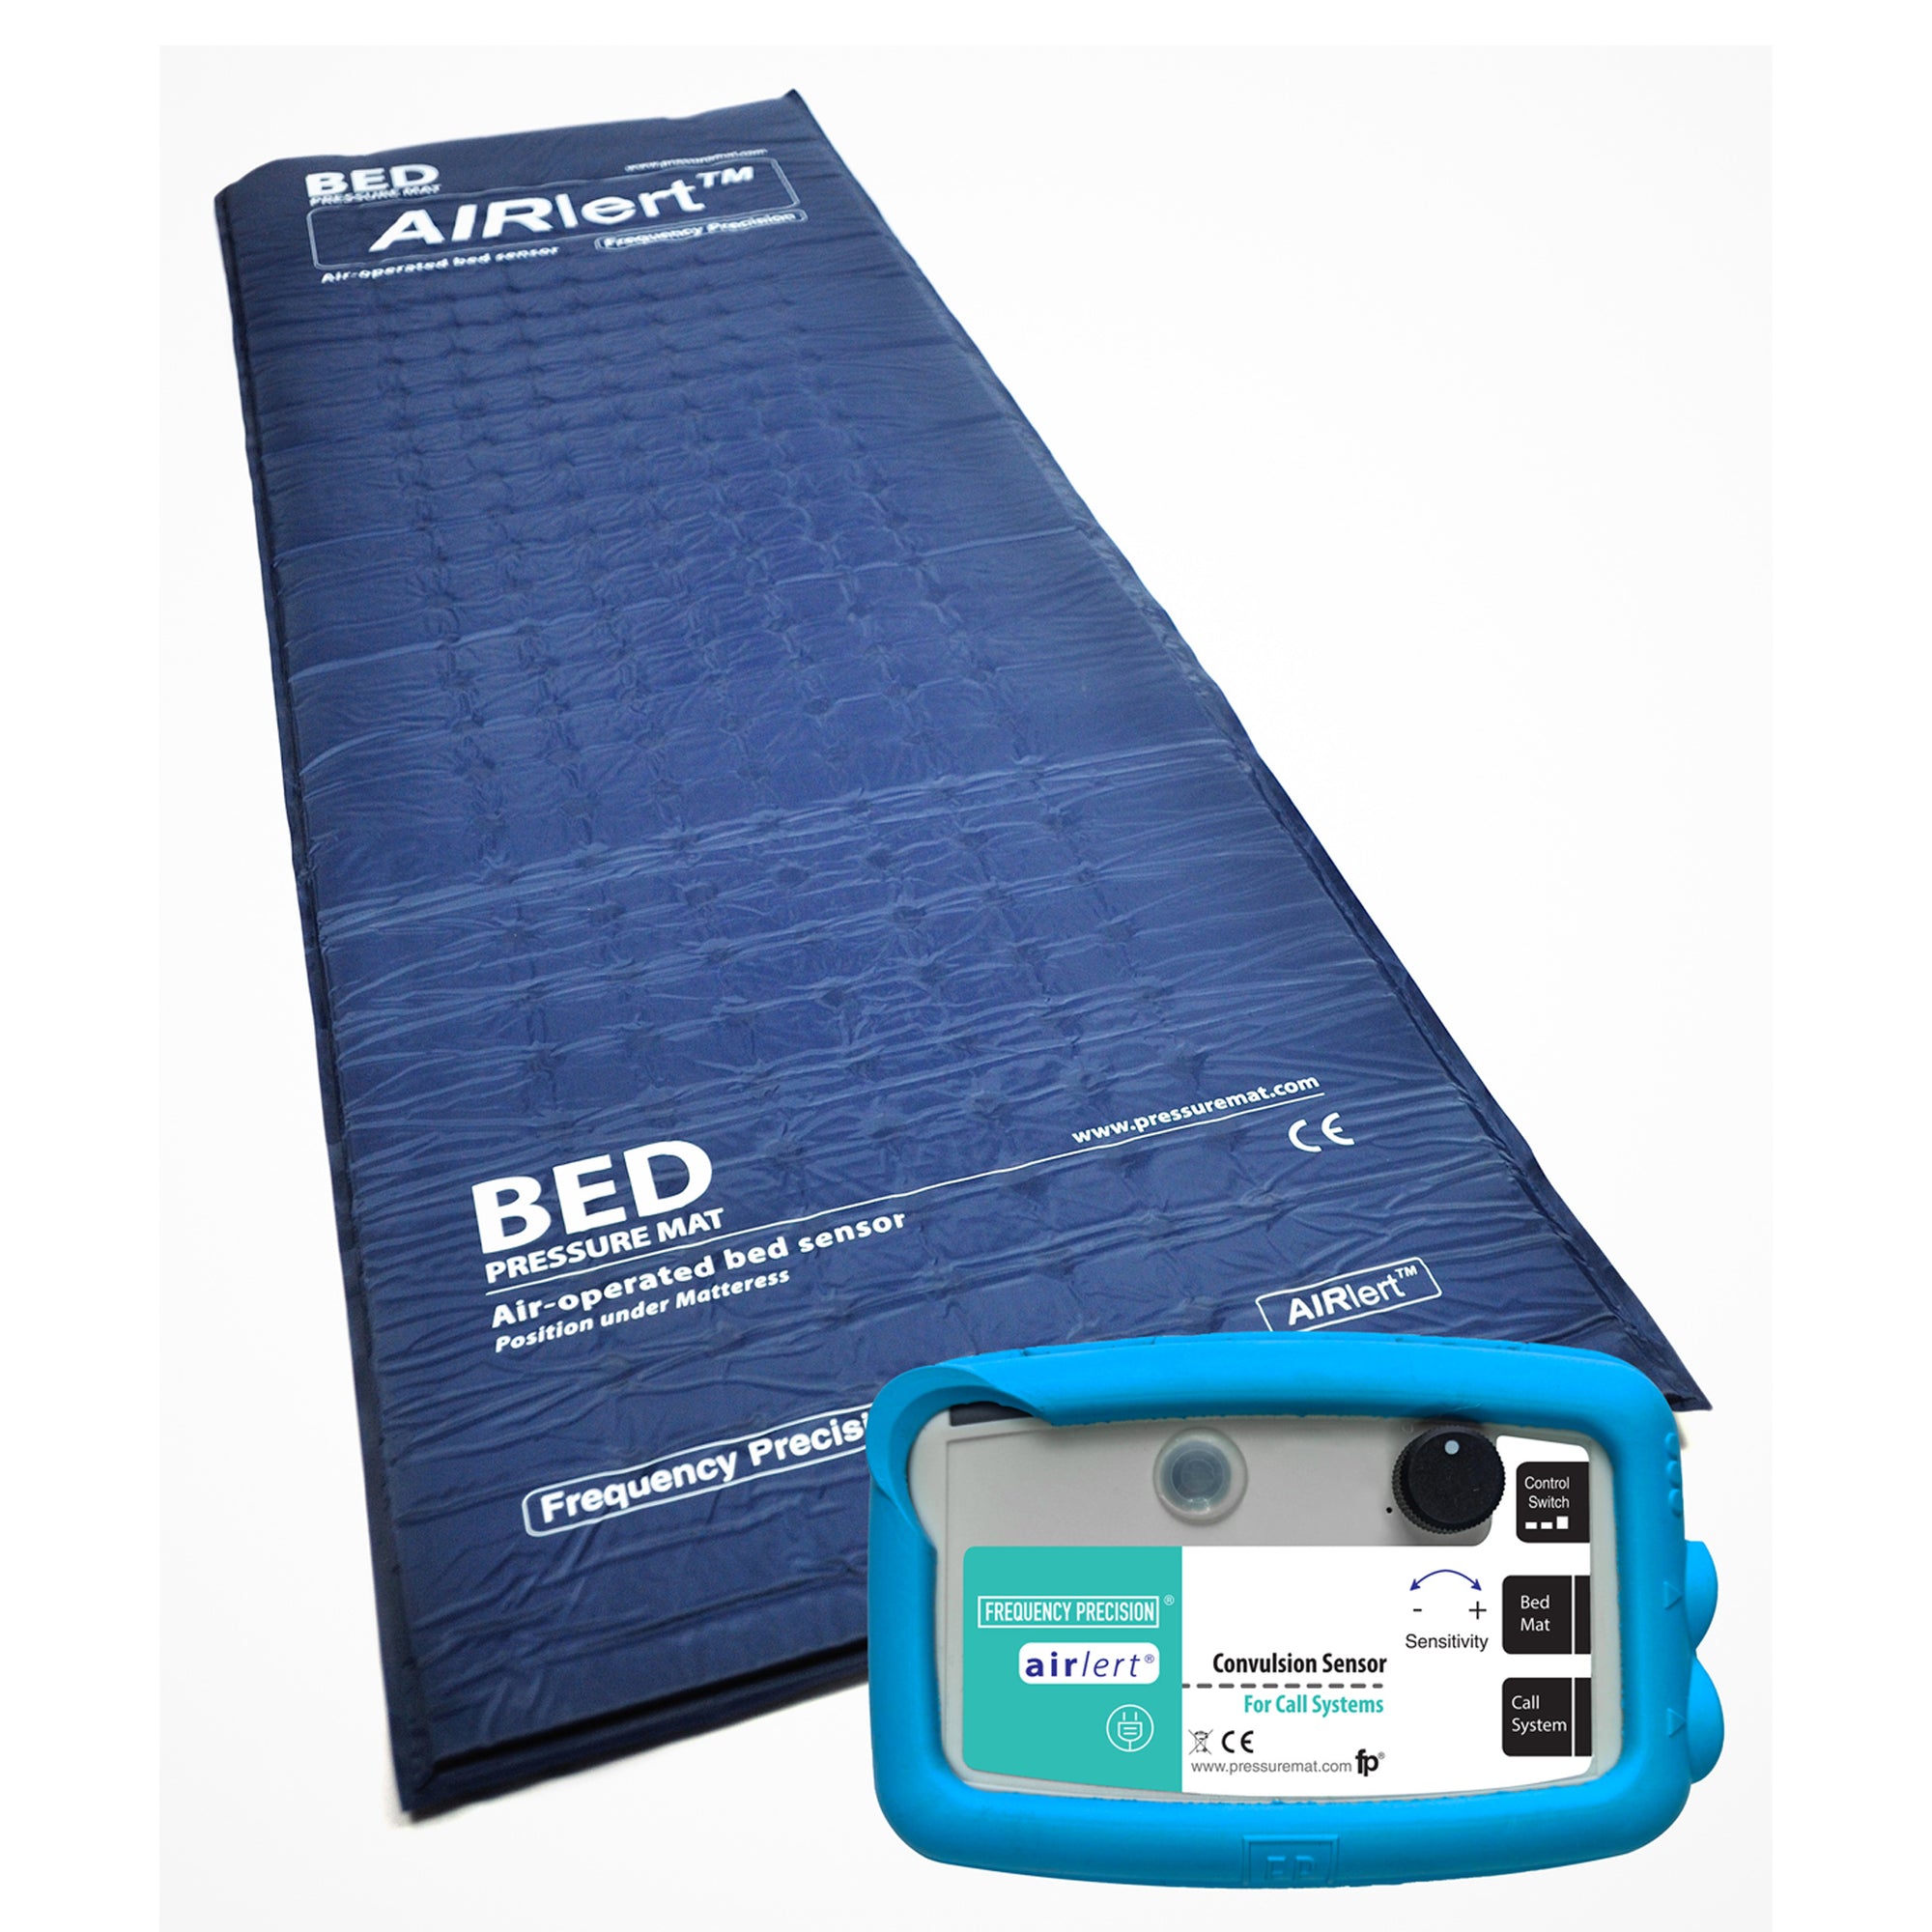 A blue bed pressure mat, alongside a convulsion sensor